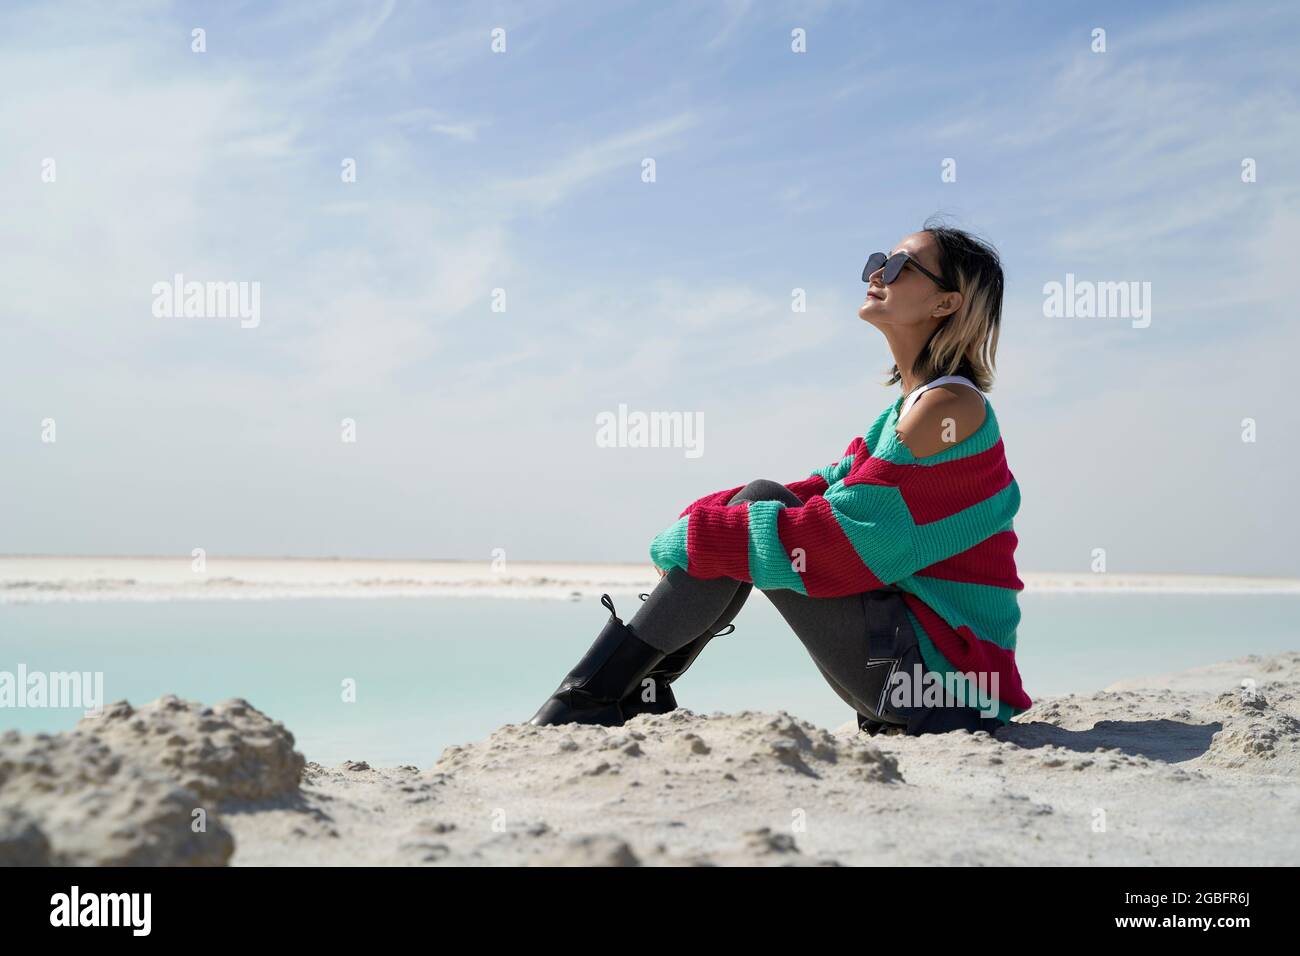 Seitenansicht der asiatischen Touristendame, die an einem Salzsee sitzt, mit Blick auf die Aussicht Stockfoto